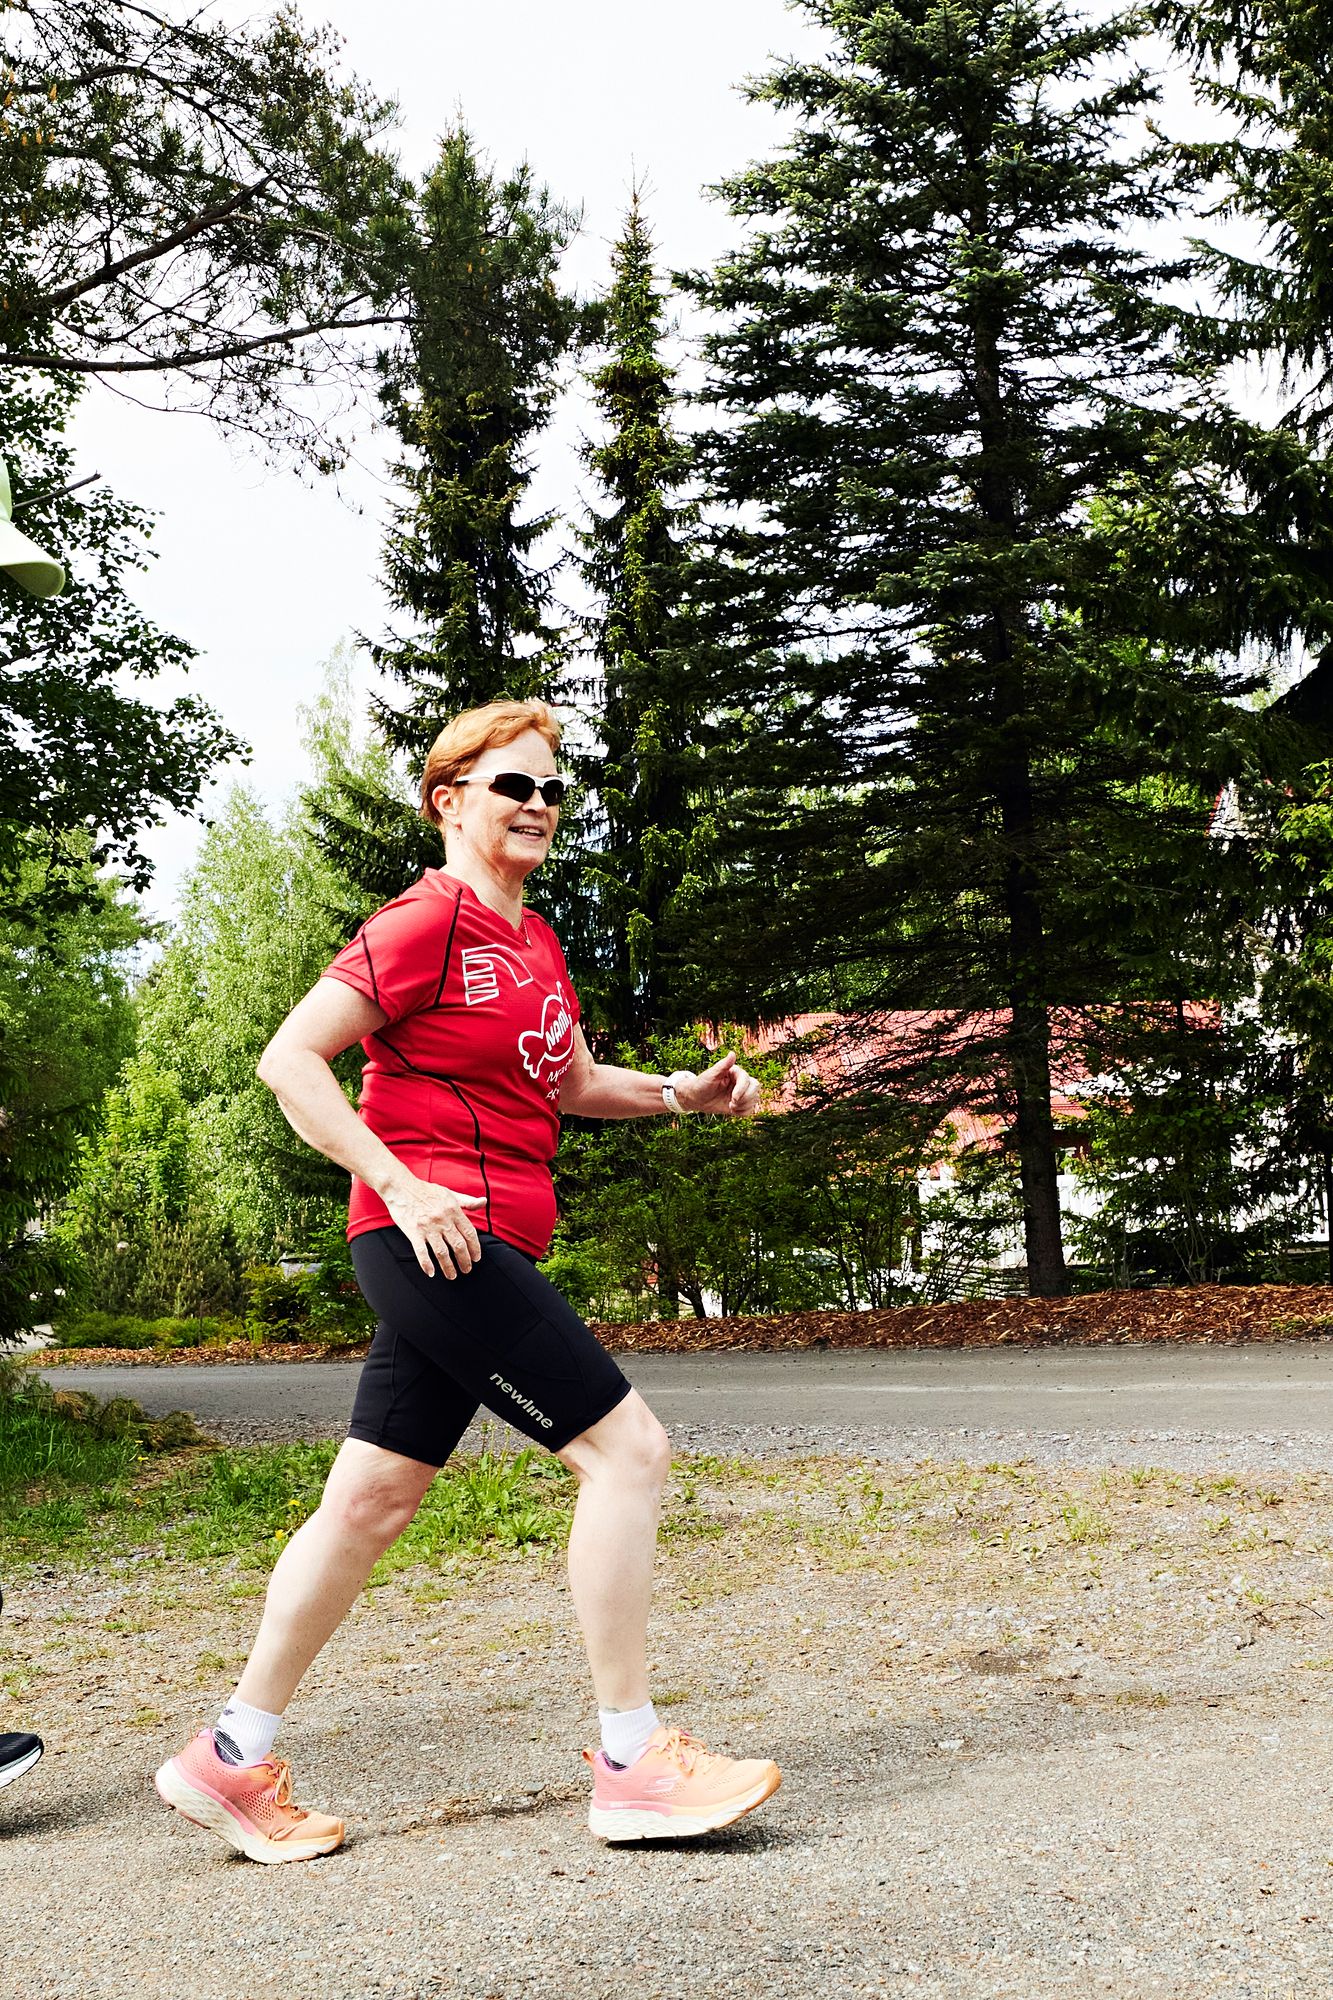 Tamperelainen Jaana Lehtinen juoksi ensimmäisen maratoninsa 20 vuotta sitten. © Sara Pihlaja 